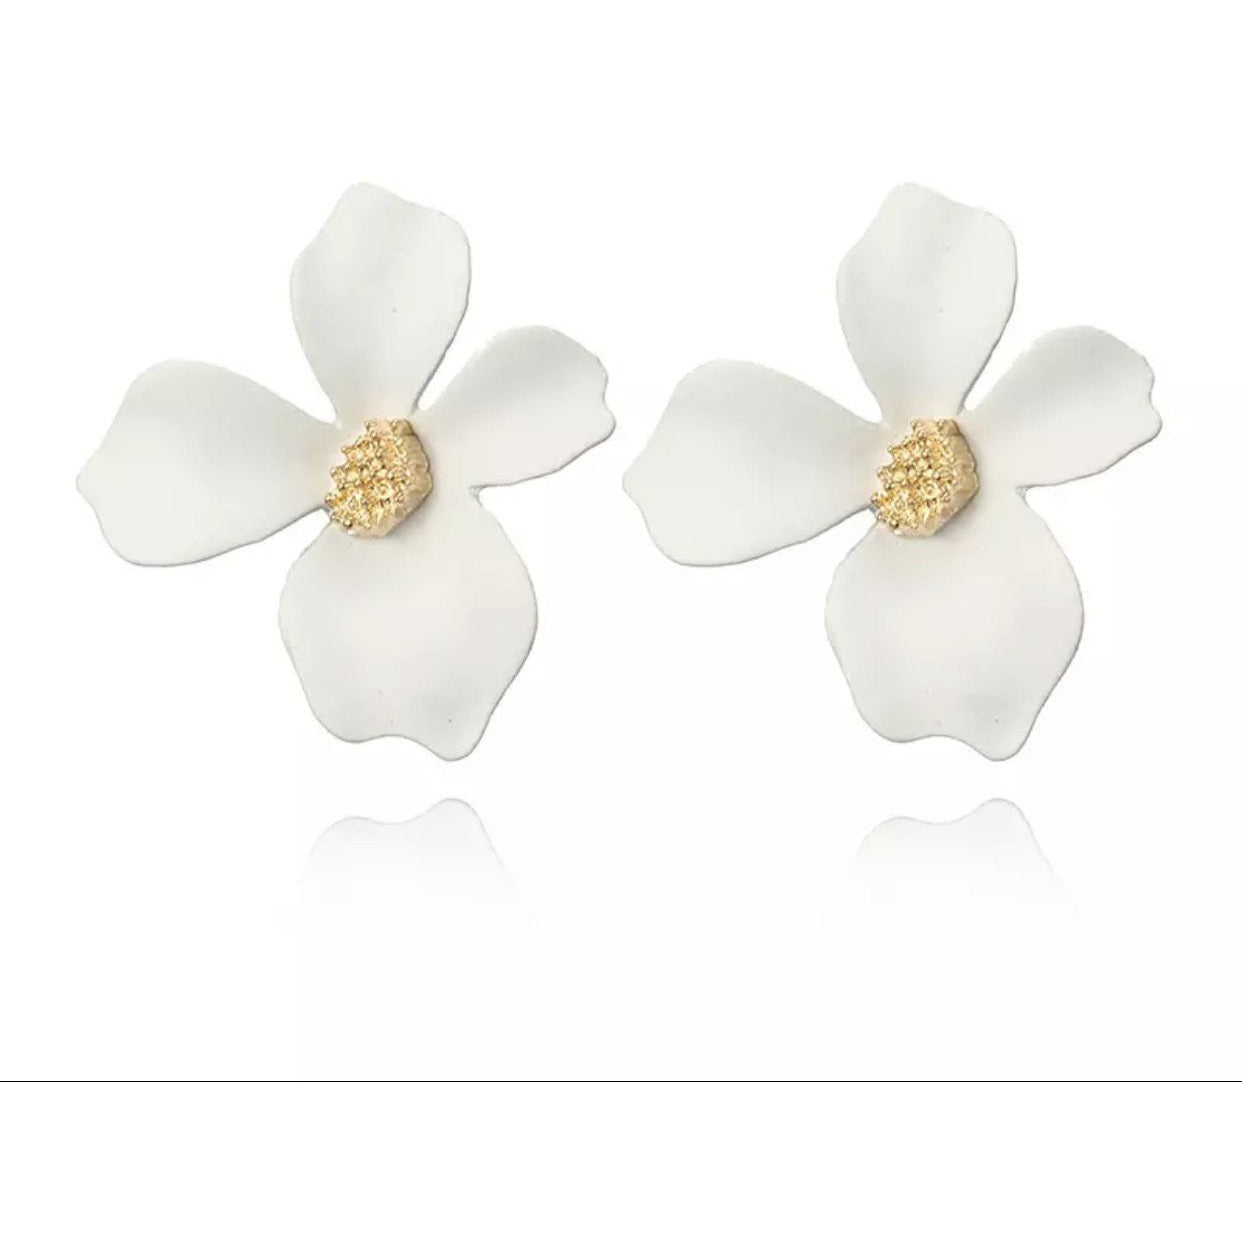 Sophie Flower earrings - Little Bird Designs